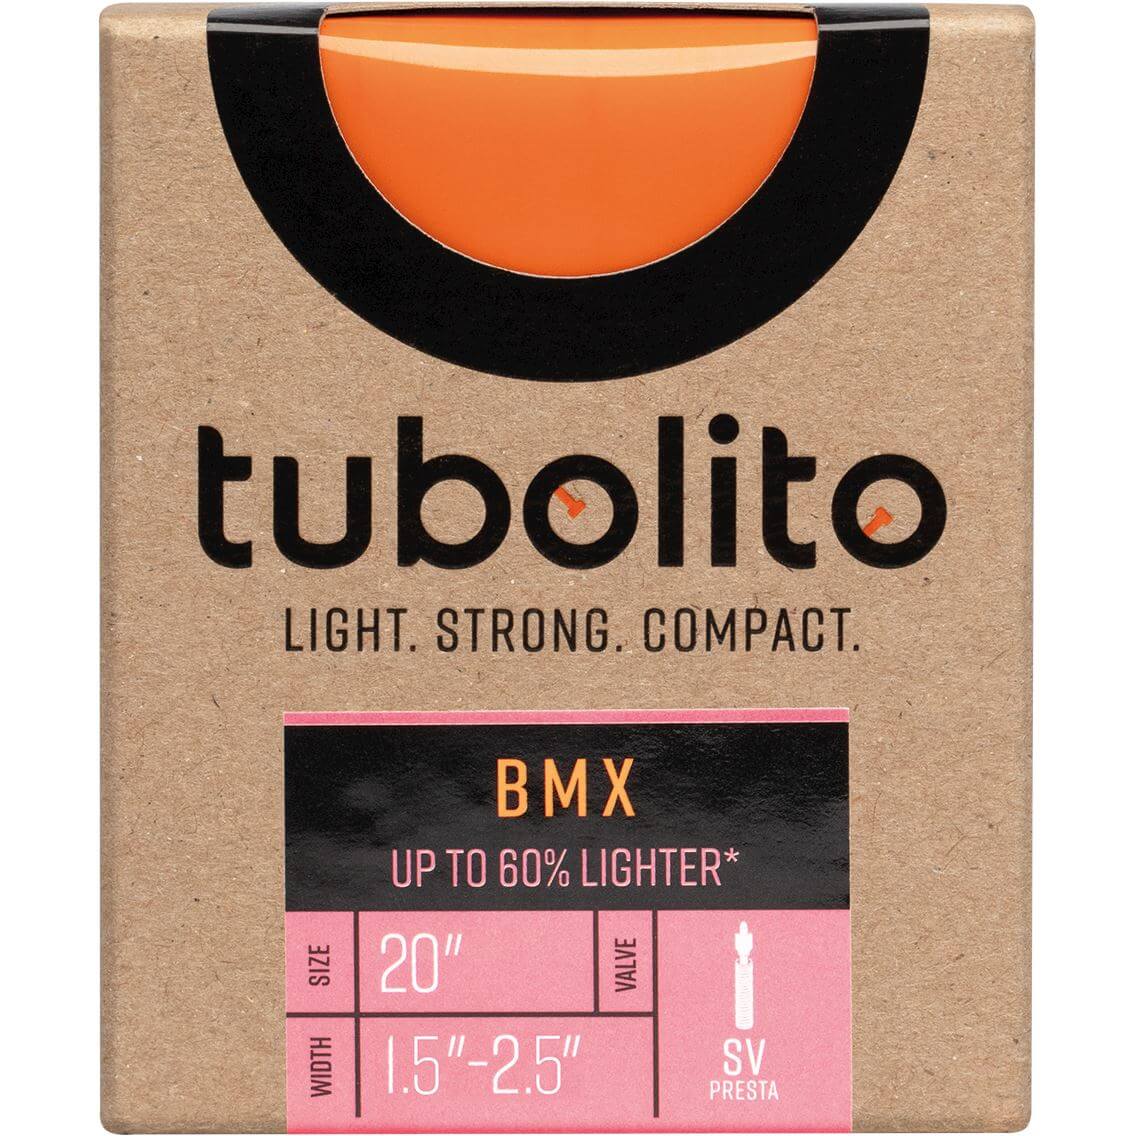 Tubolito Bnb Tubo 20 x 1.5 2.5 fv 42mm